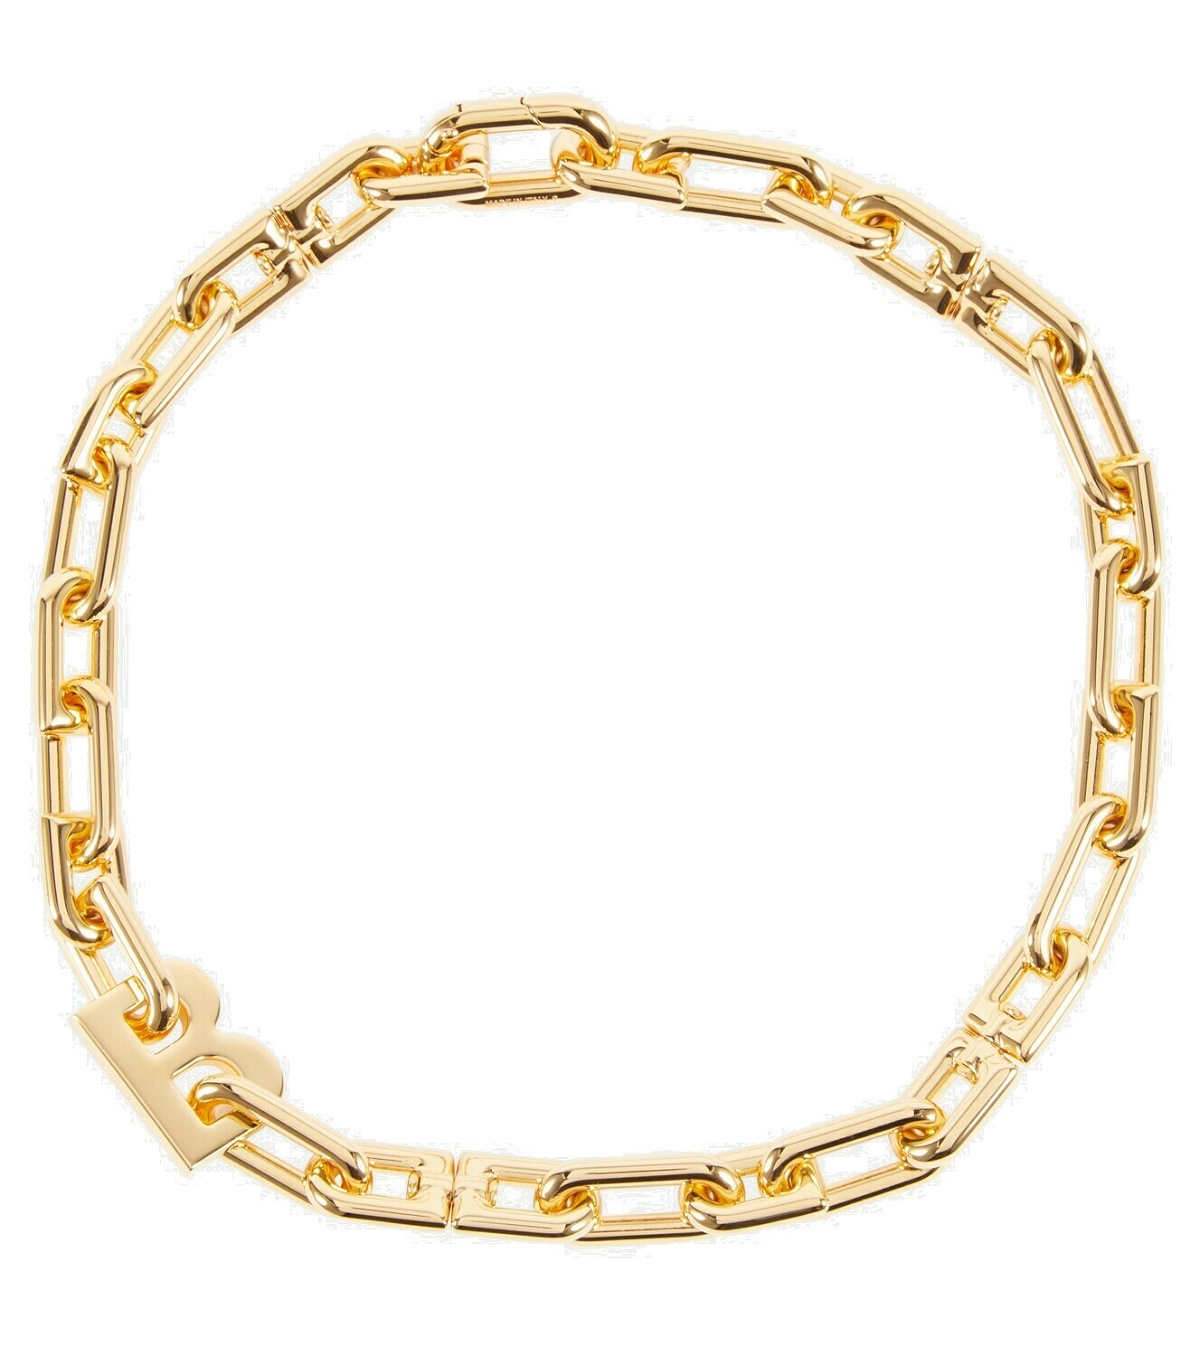 Balenciaga - B chain necklace Balenciaga